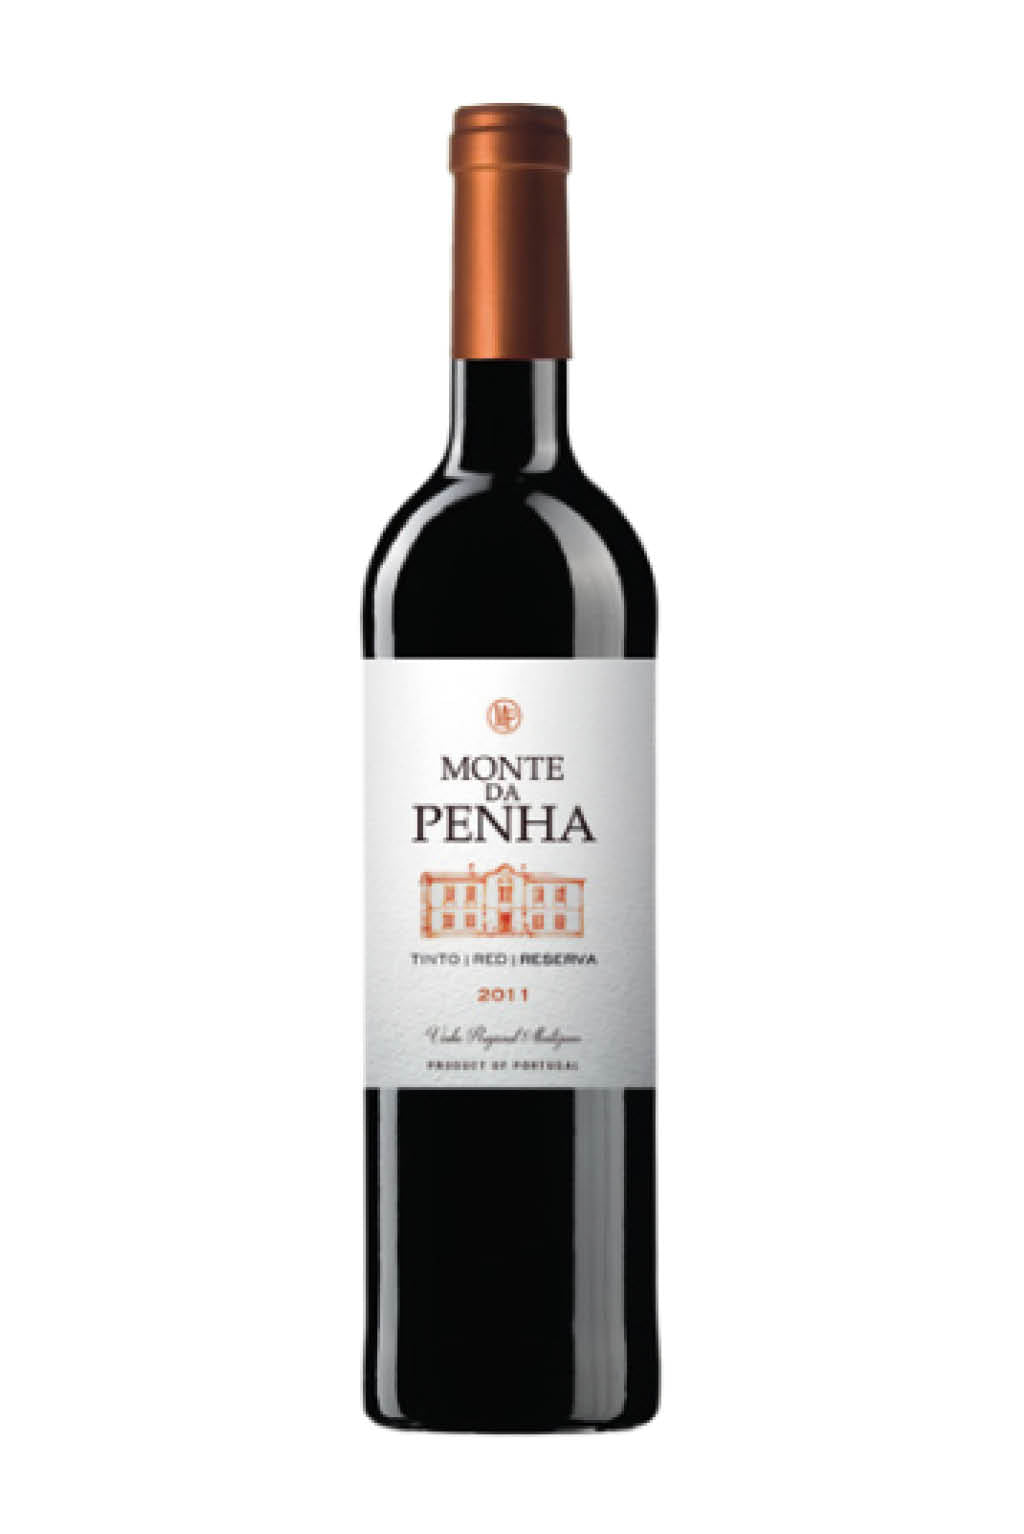 Monte Da Penha Reserva 2011 - Vinho Regional Alentejano